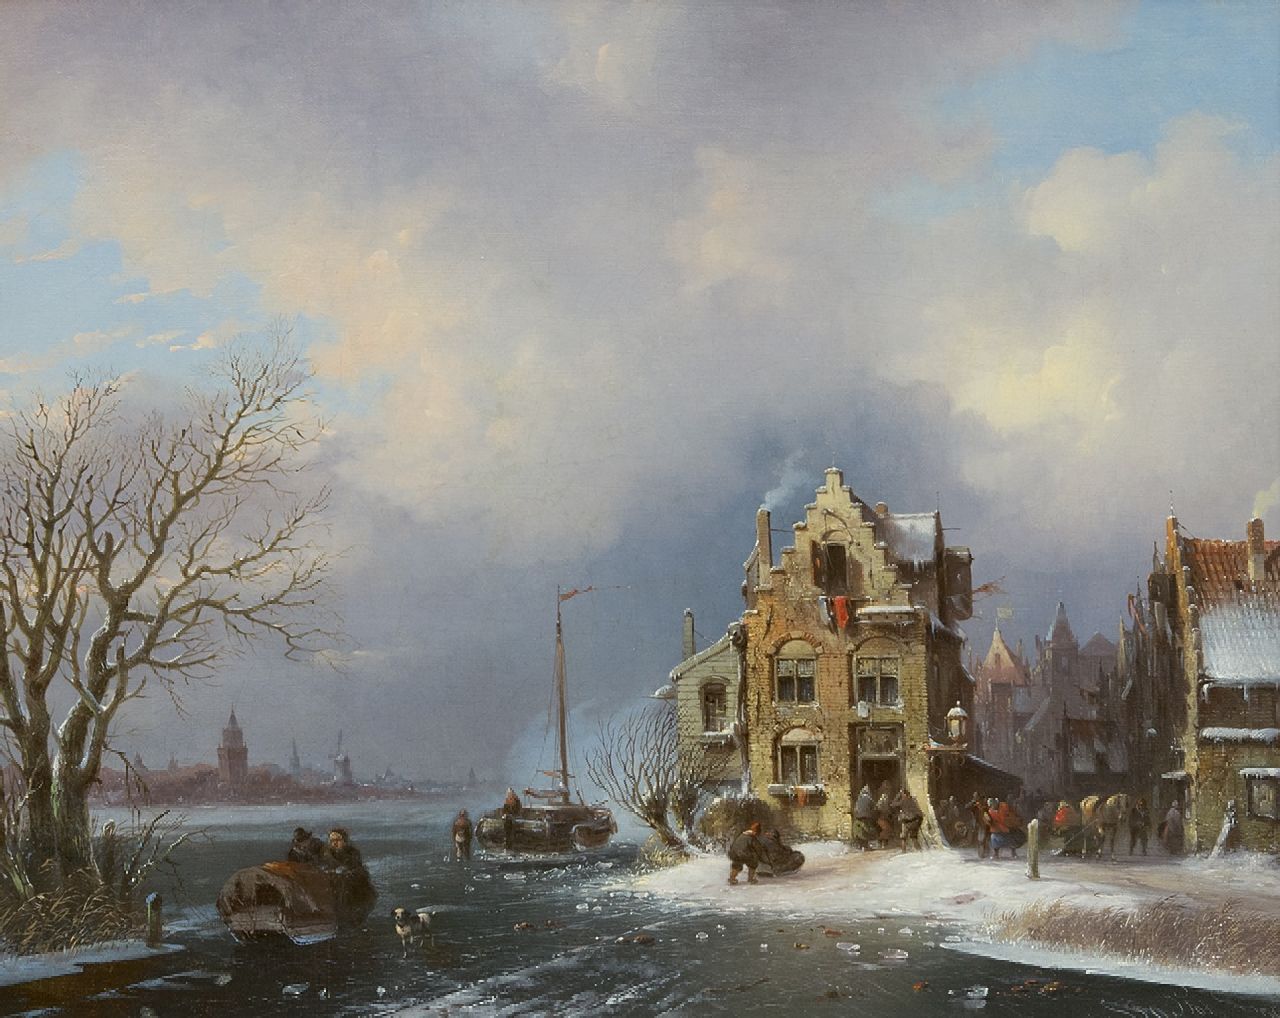 Stok J. van der | Jacobus van der Stok | Schilderijen te koop aangeboden | Bedrijvigheid in een stad aan een bevroren rivier, olieverf op doek 40,8 x 50,6 cm, gesigneerd rechtsonder en gedateerd '59